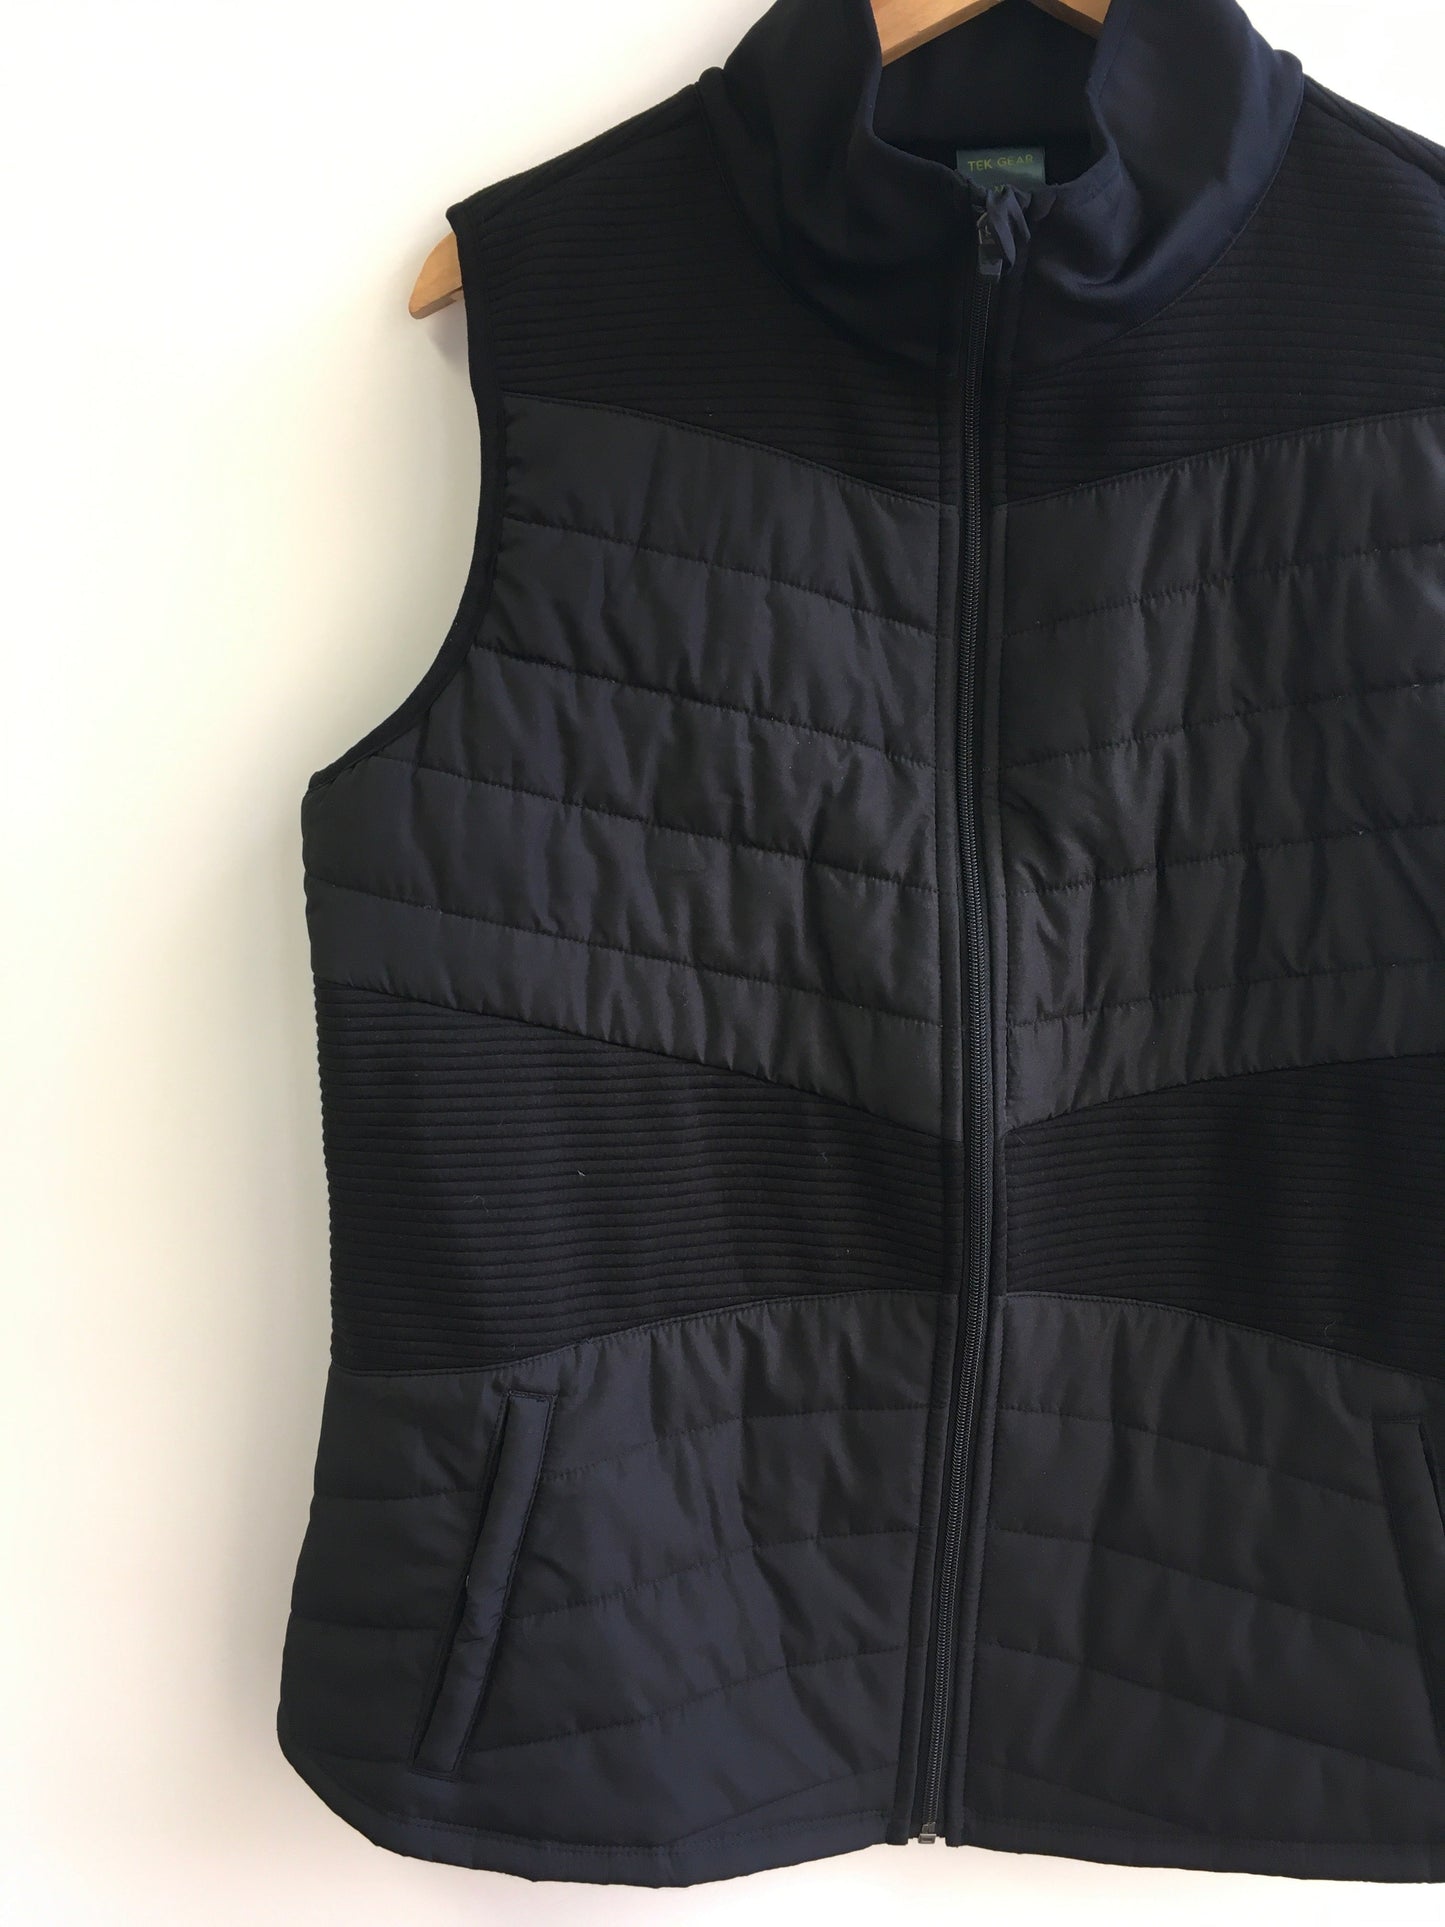 Vest Fleece By Tek Gear  Size: Xxl